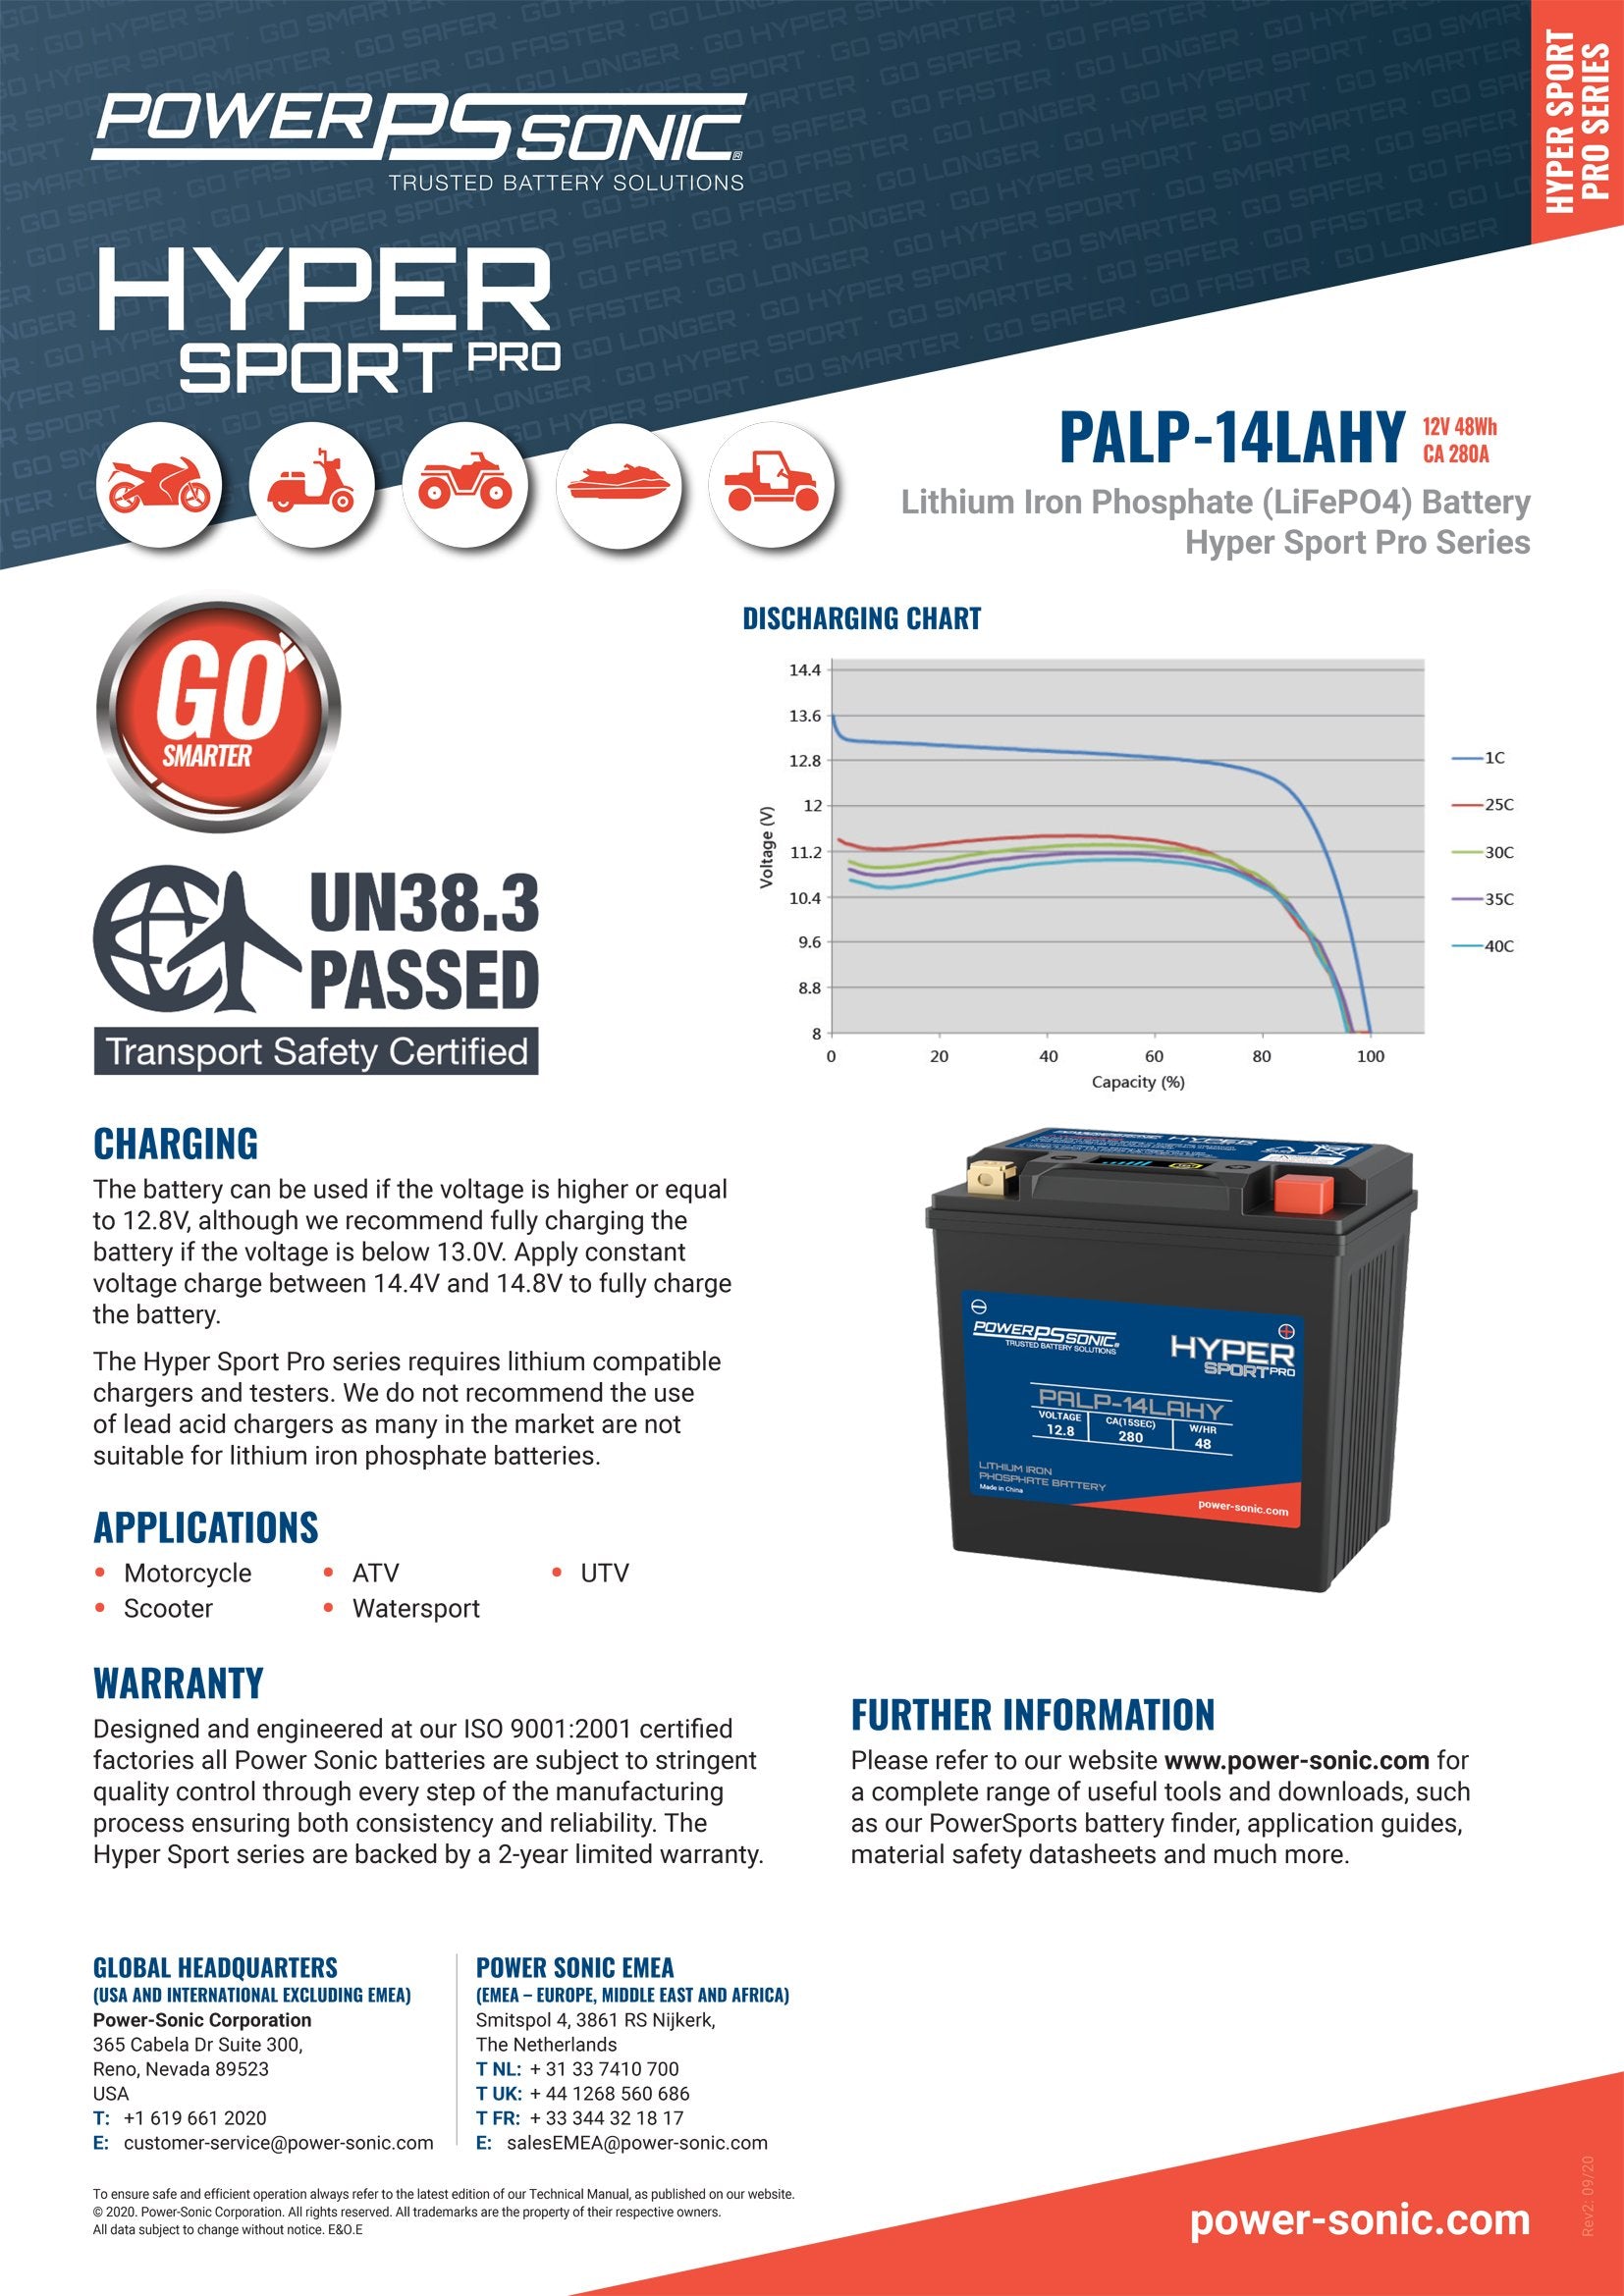 PALP-14LAHY Hyper Sport Pro 12.8V, 280A LiFePO4 PowerSport Battery